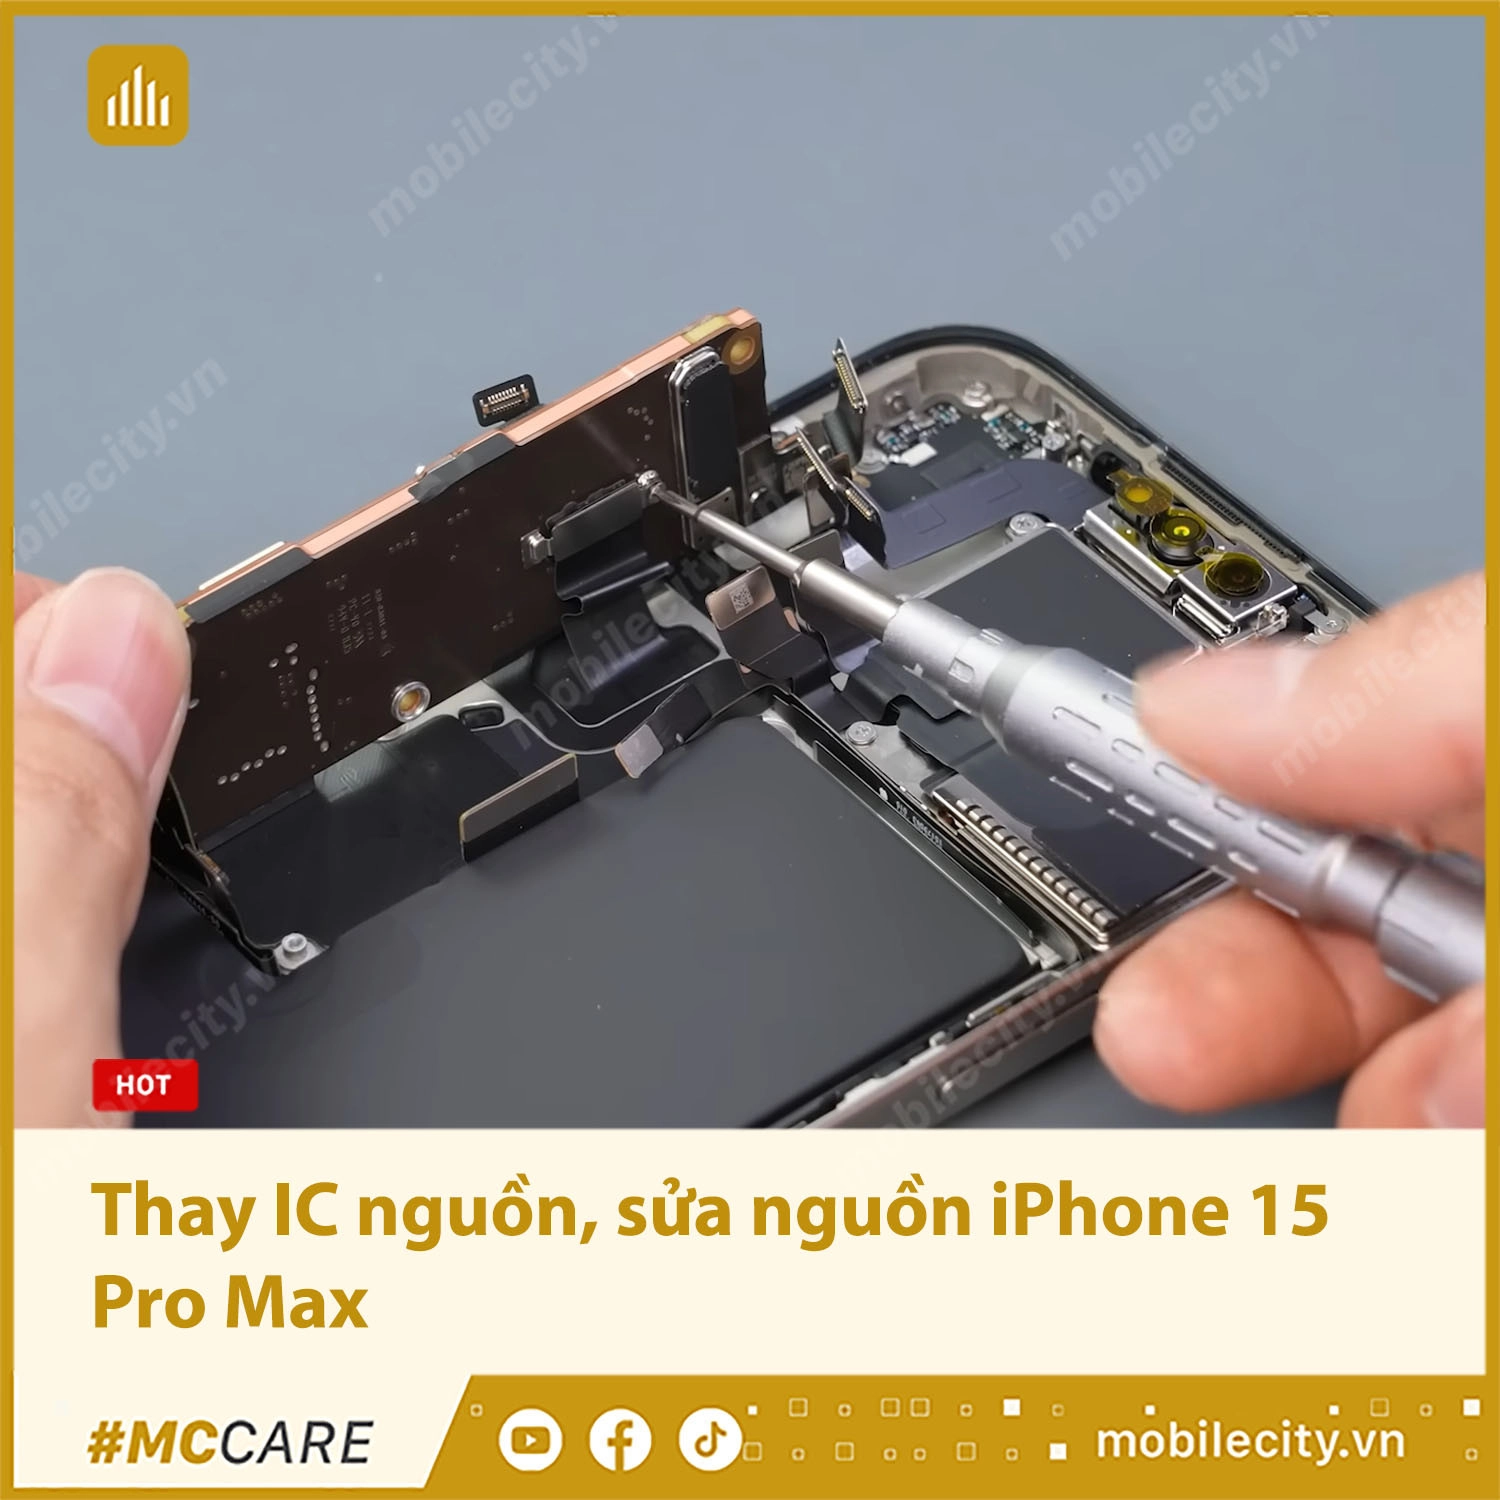 Thay IC nguồn iPhone 7 / 7 Plus - Lấy ngay giá rẻ, uy tín tại Hà Nội